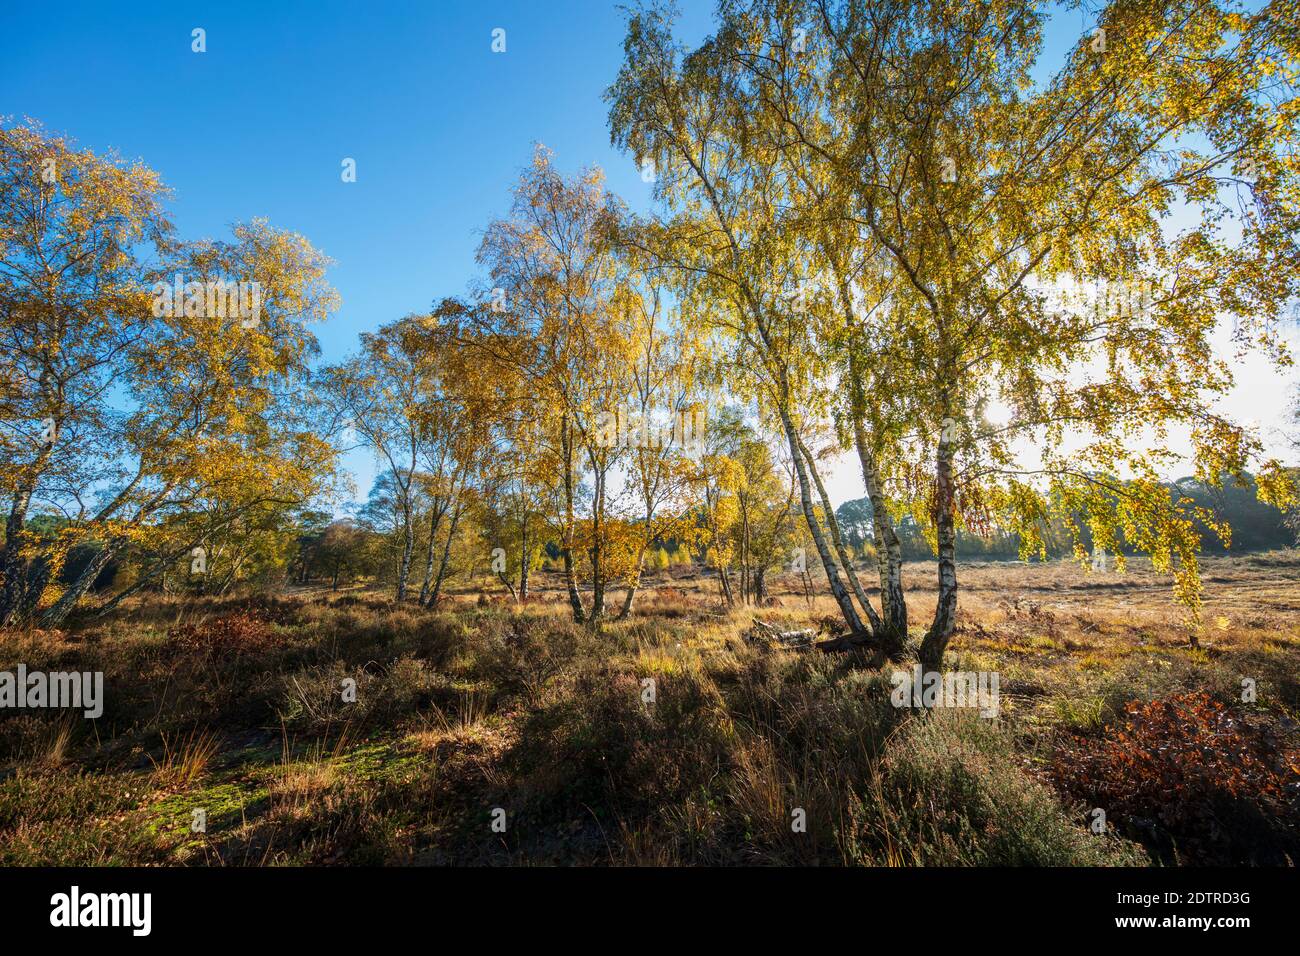 Silberbirchtrees auf Newtown Common Heide mit Herbstblättern, Newtown Common, Burghclere, Hampshire, England, Vereinigtes Königreich, Europa Stockfoto